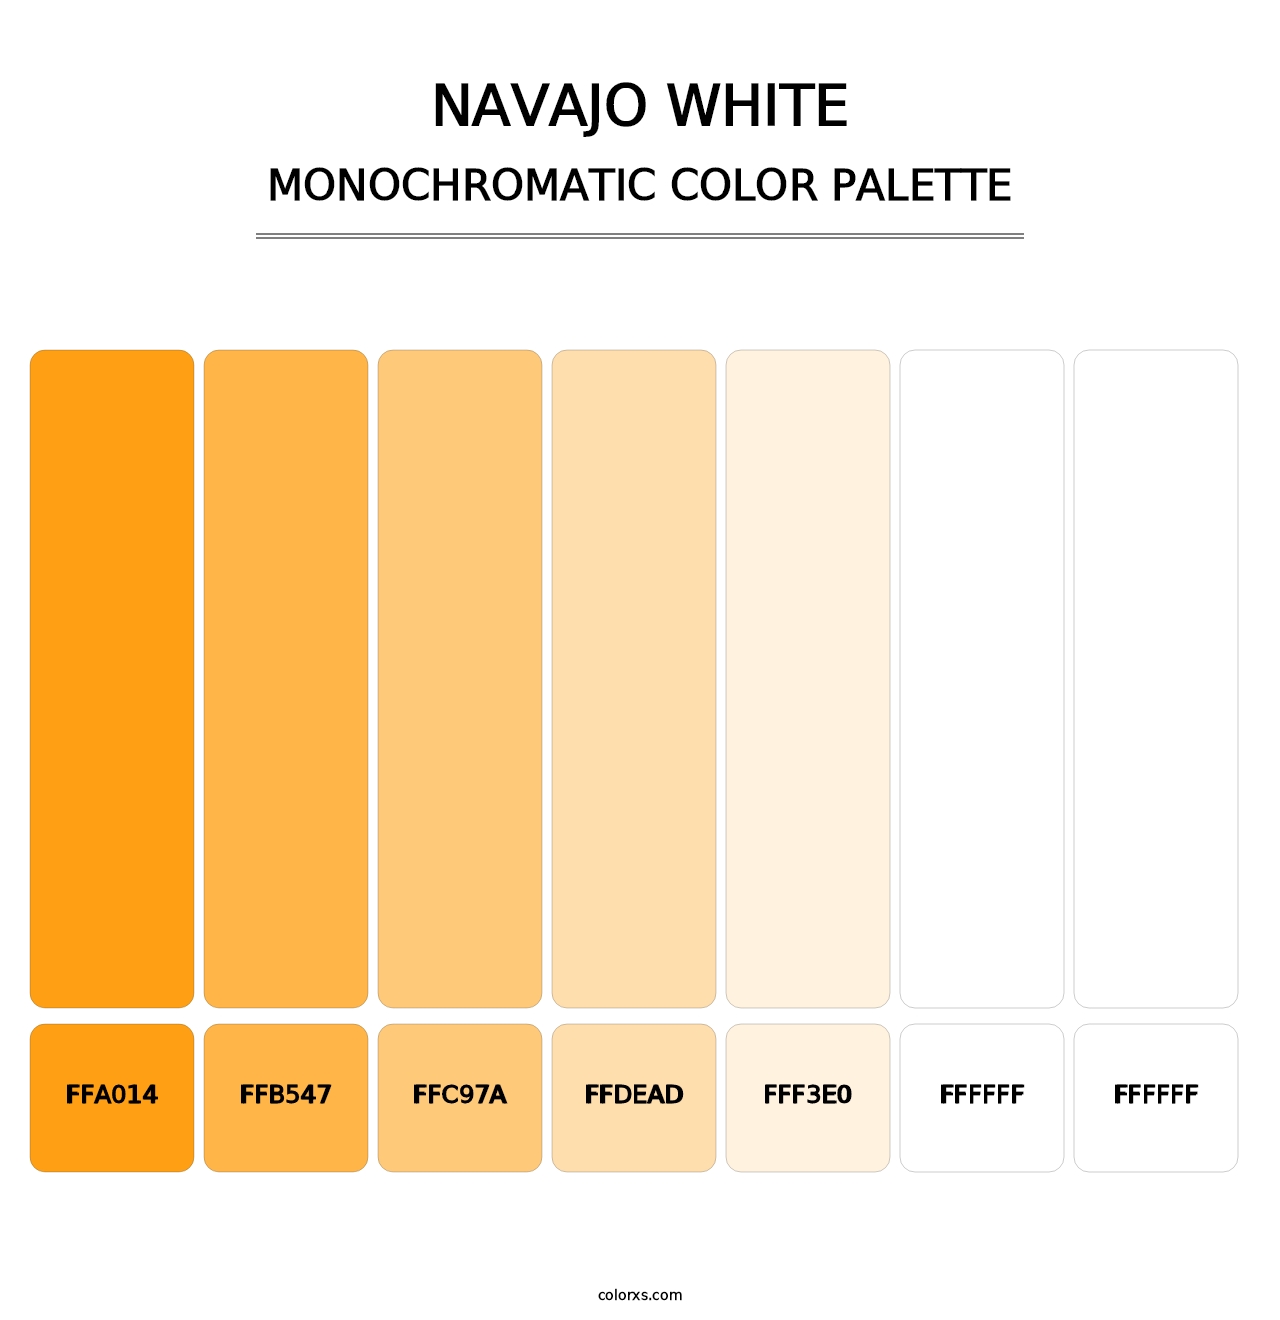 Navajo White - Monochromatic Color Palette